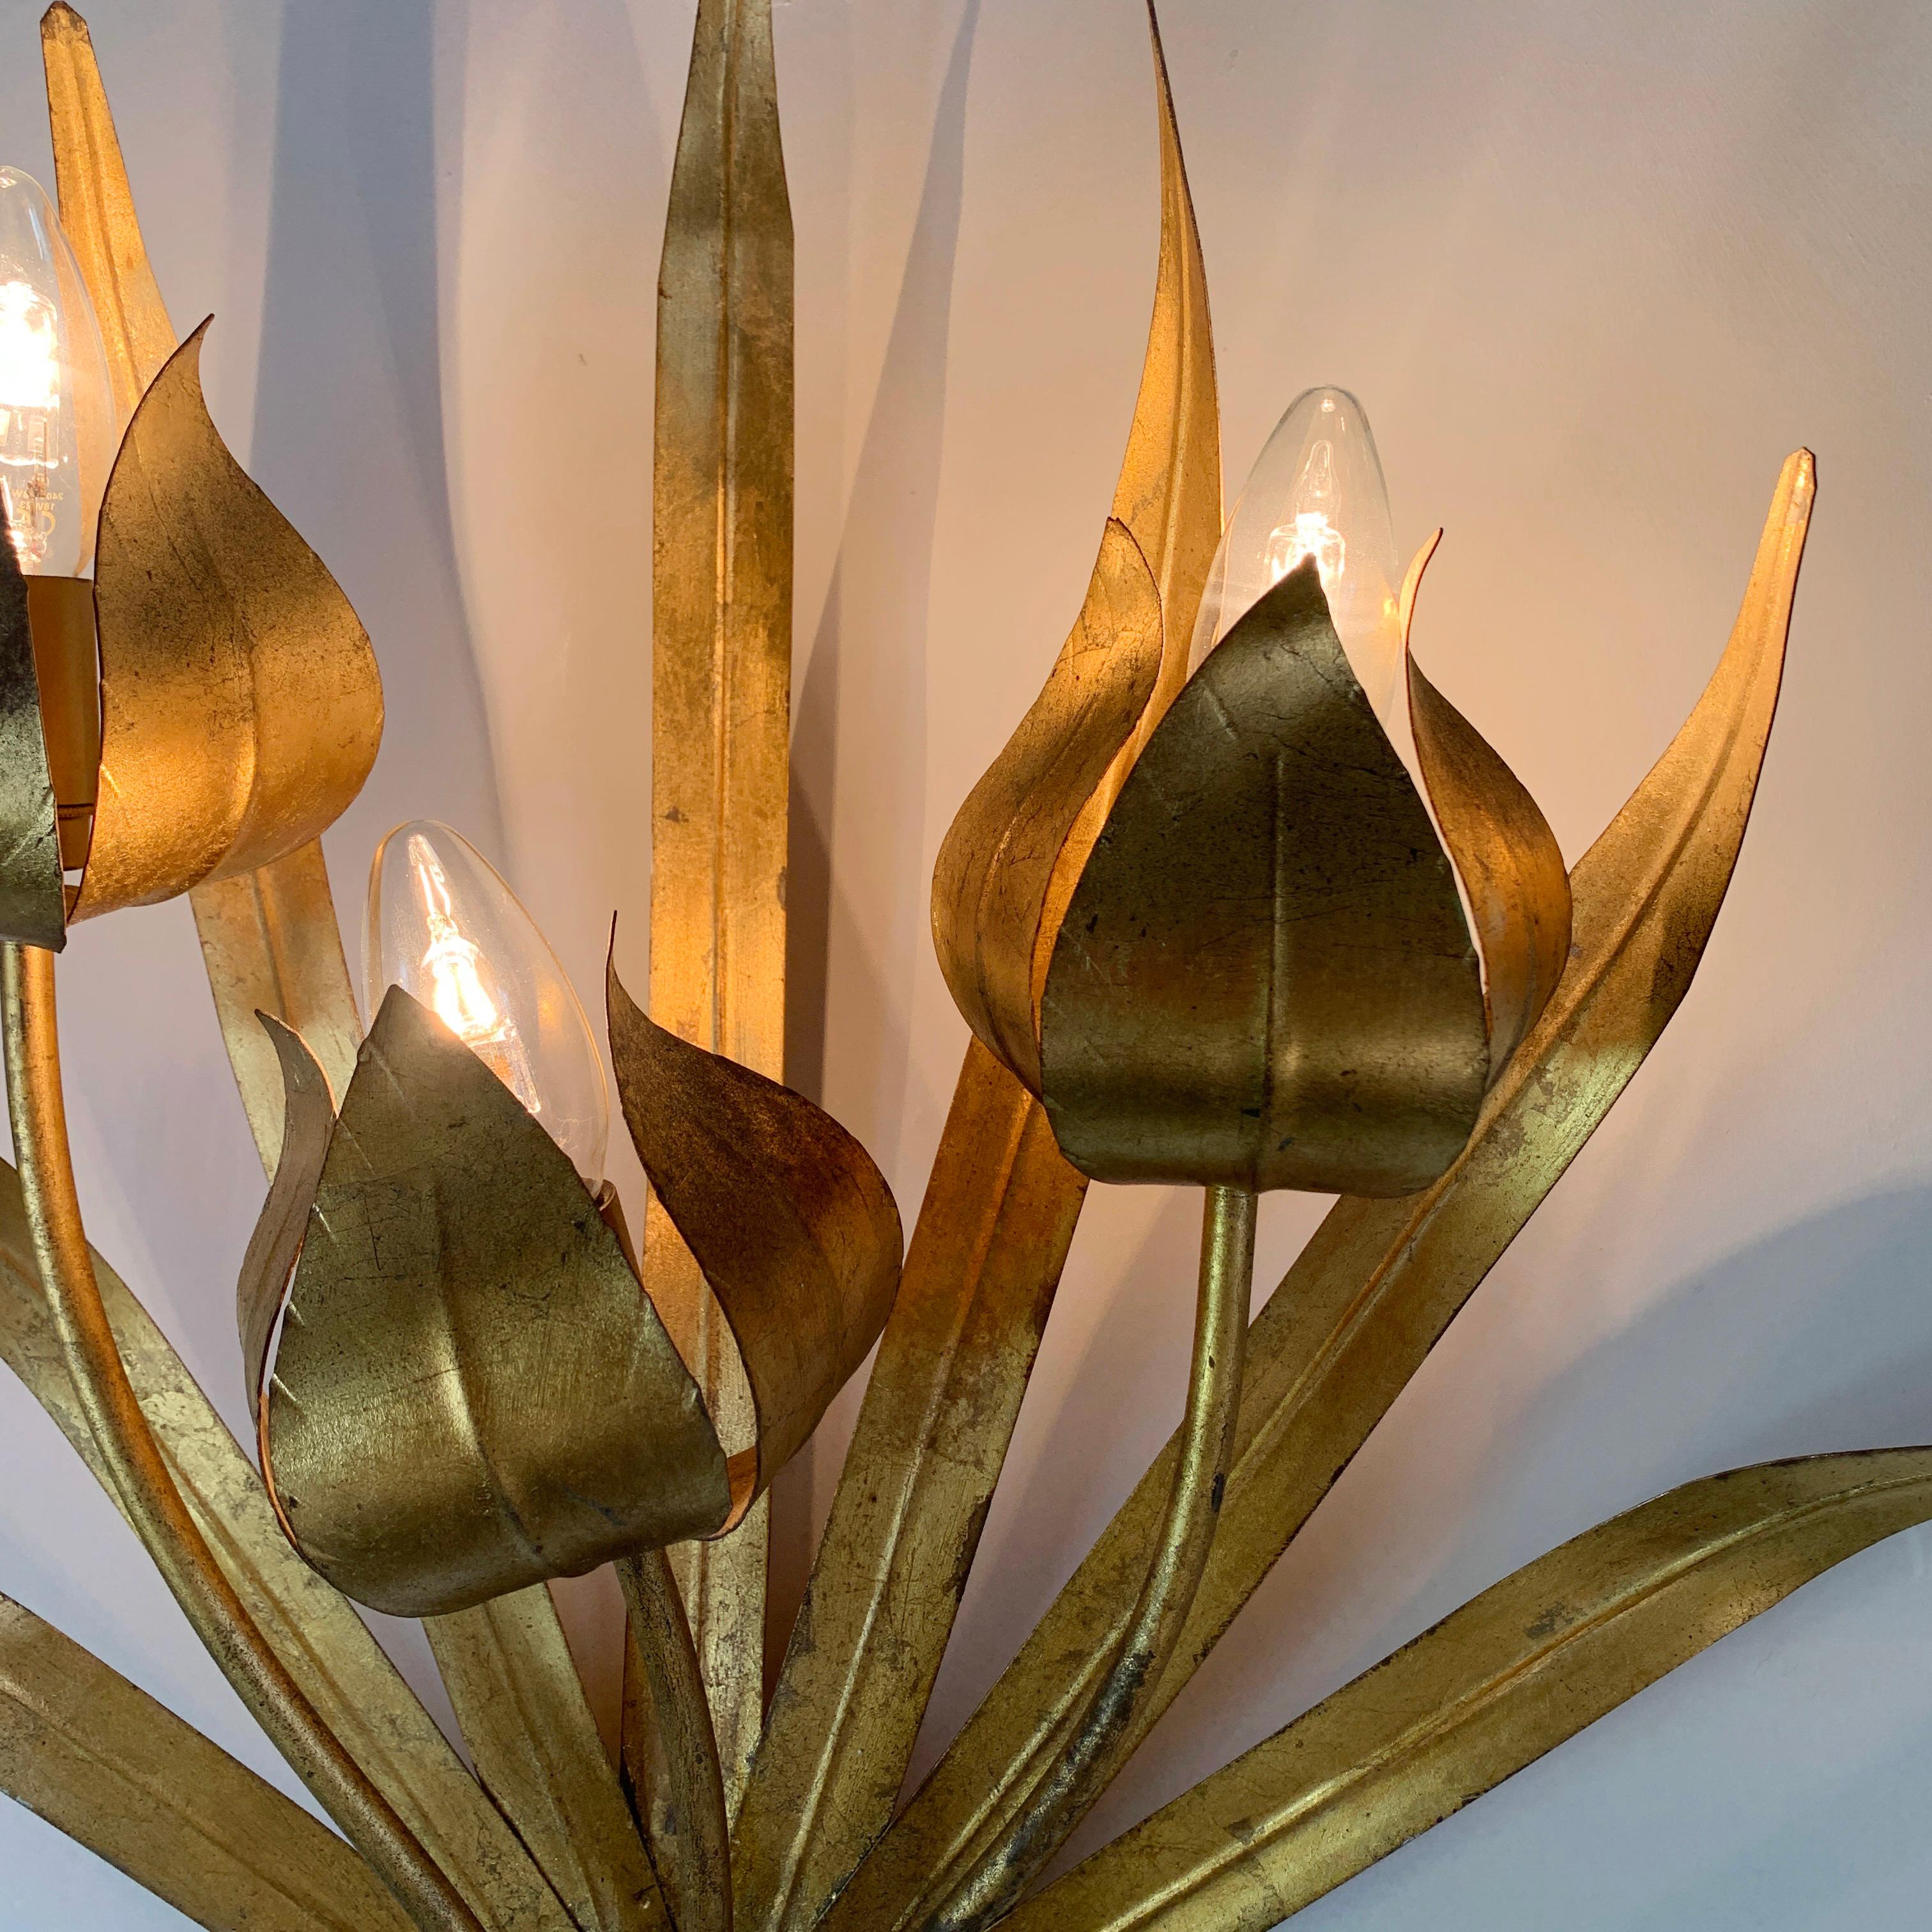 Magnifique applique murale du fabricant espagnol Ferro Art. Le métal doré prend la forme de 7 larges feuilles, les 3 porte-lampes s'insèrent dans les décorations en forme de têtes de fleurs. Comme on peut le voir sur les images, il s'agit d'une